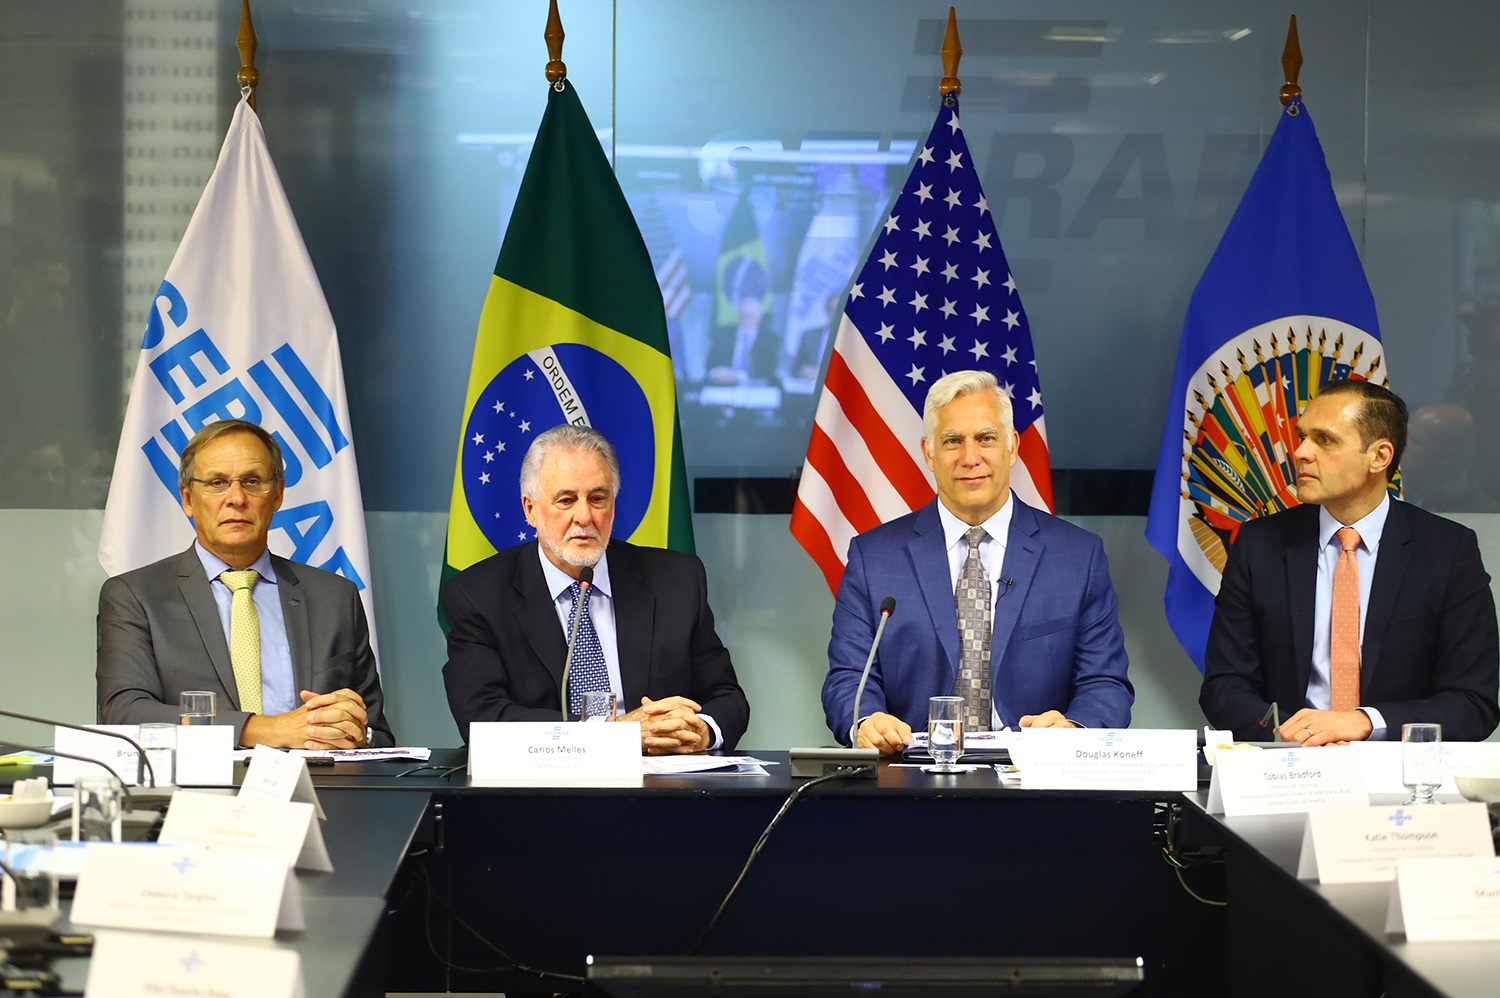 Sebrae e OEA assinam acordo para crescimento econômico de pequenas empresas brasileiras